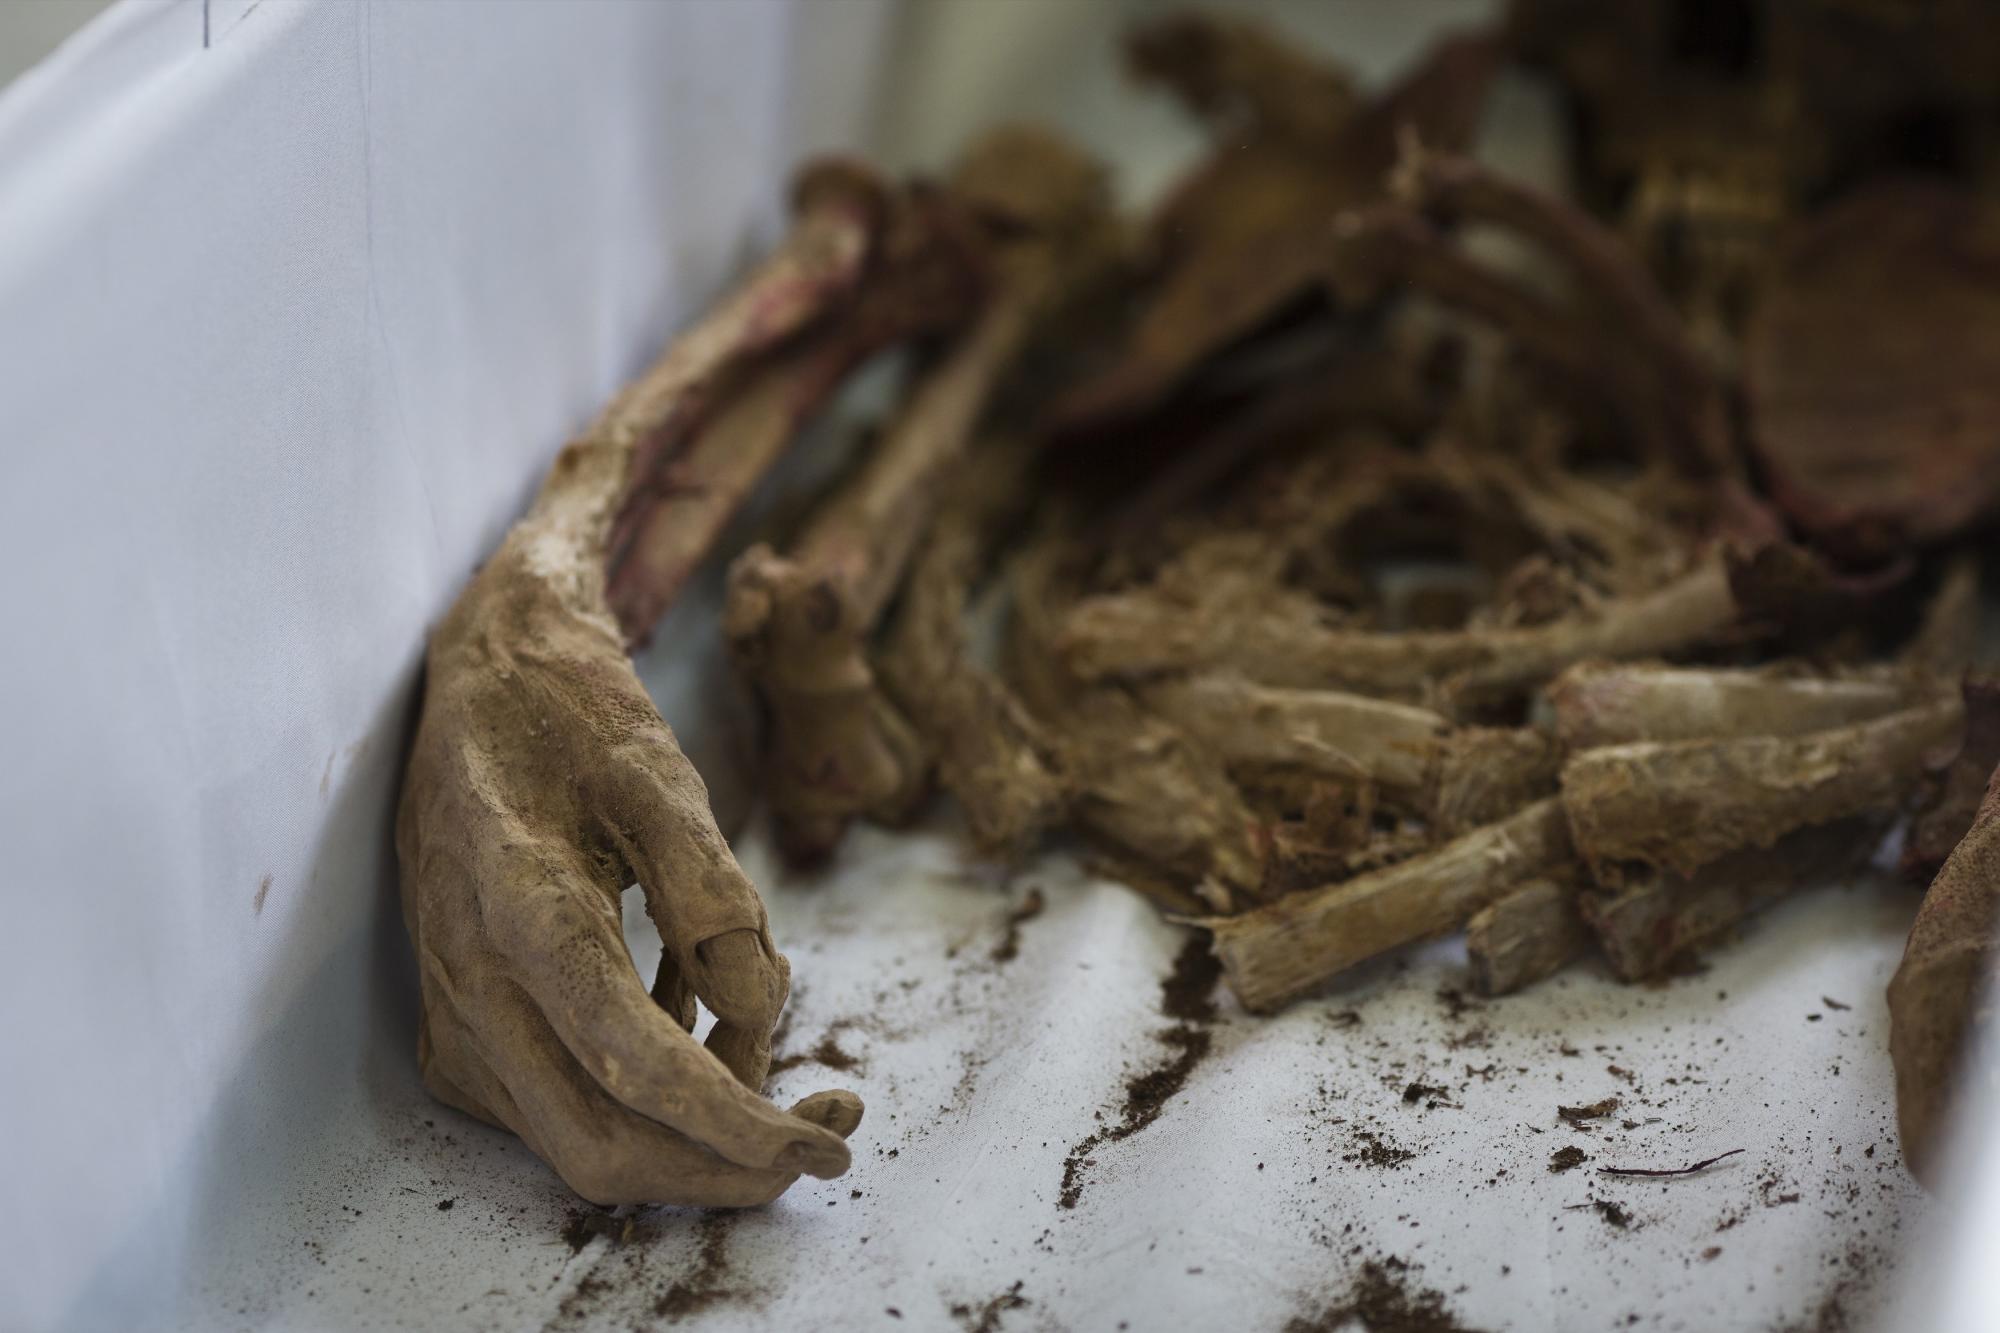 Esta imagen, tomada el 25 de noviembre de 2015, muestra la mano momificada de Lourdes Tierres Torre, víctima de una masacre de Sendero Luminoso en 1992, en Valle Esmeralda de Huayao, Perú. El cuerpo de Tierres había sido arrojado junto al de otras víctimas a una fosa común justo después de su asesinato, sin un entierro adecuado. 